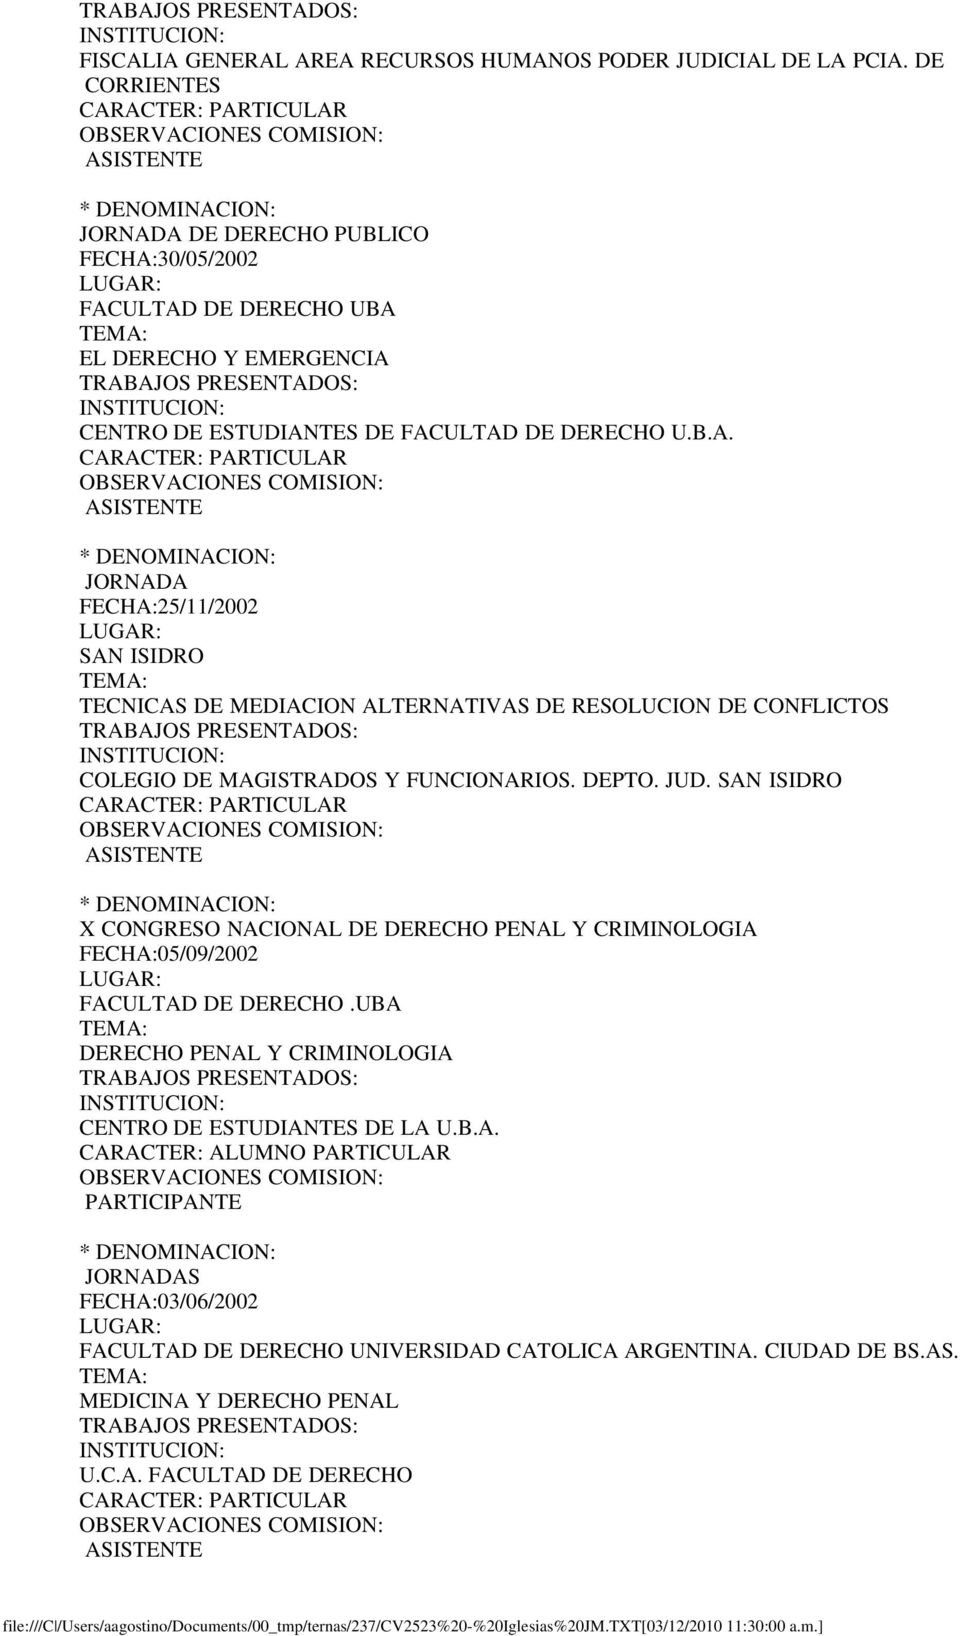 DEPTO. JUD. SAN ISIDRO X CONGRESO NACIONAL DE DERECHO PENAL Y CRIMINOLOGIA FECHA:05/09/2002 FACULTAD DE DERECHO.UBA DERECHO PENAL Y CRIMINOLOGIA CENTRO DE ESTUDIANTES DE LA U.B.A. CARACTER: ALUMNO PARTICULAR PARTICIPANTE JORNADAS FECHA:03/06/2002 FACULTAD DE DERECHO UNIVERSIDAD CATOLICA ARGENTINA.